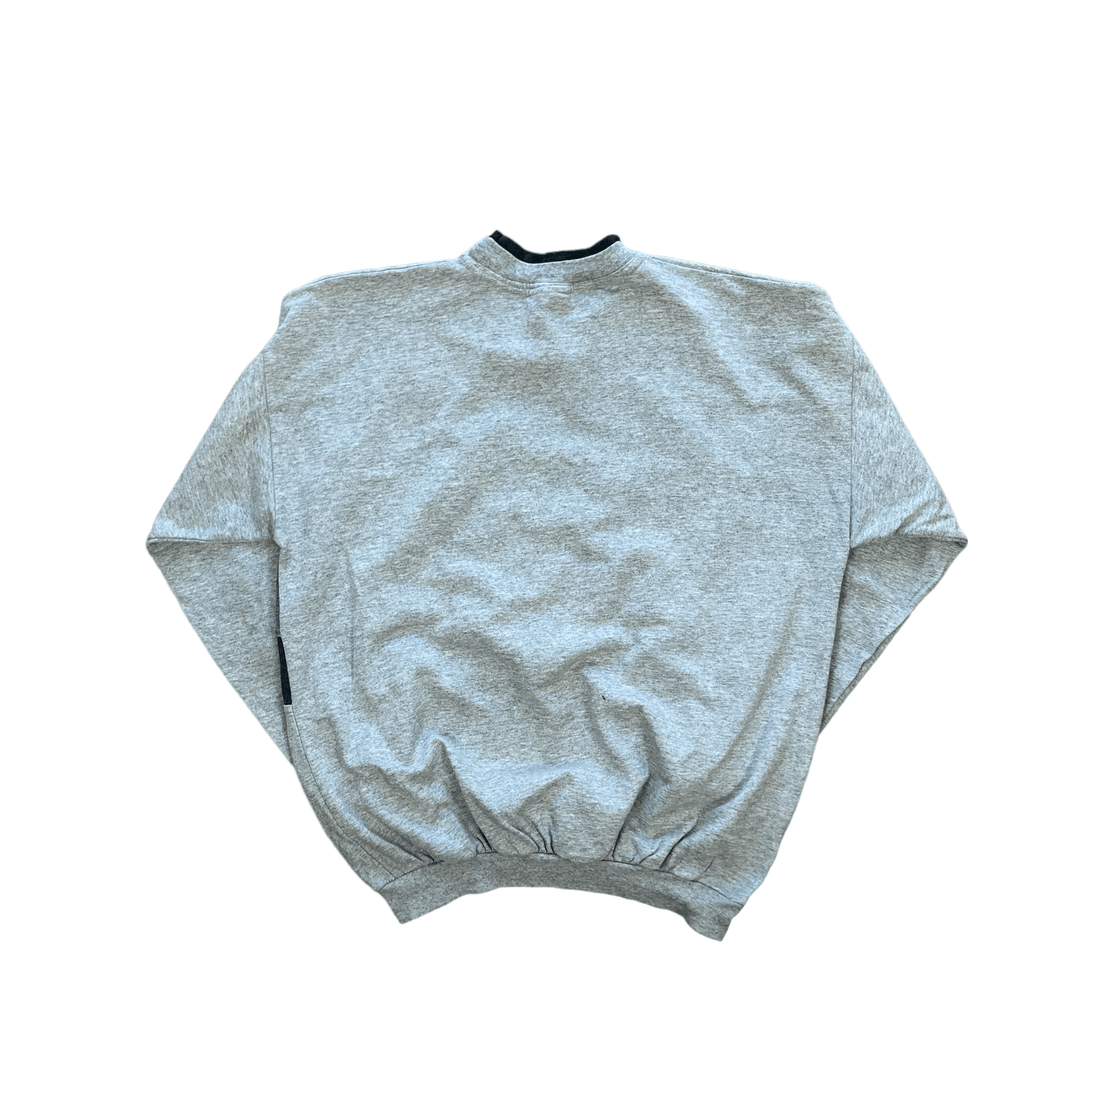 Vintage 90s Grey Los Angeles Kings Sweatshirt - Small - The Streetwear Studio